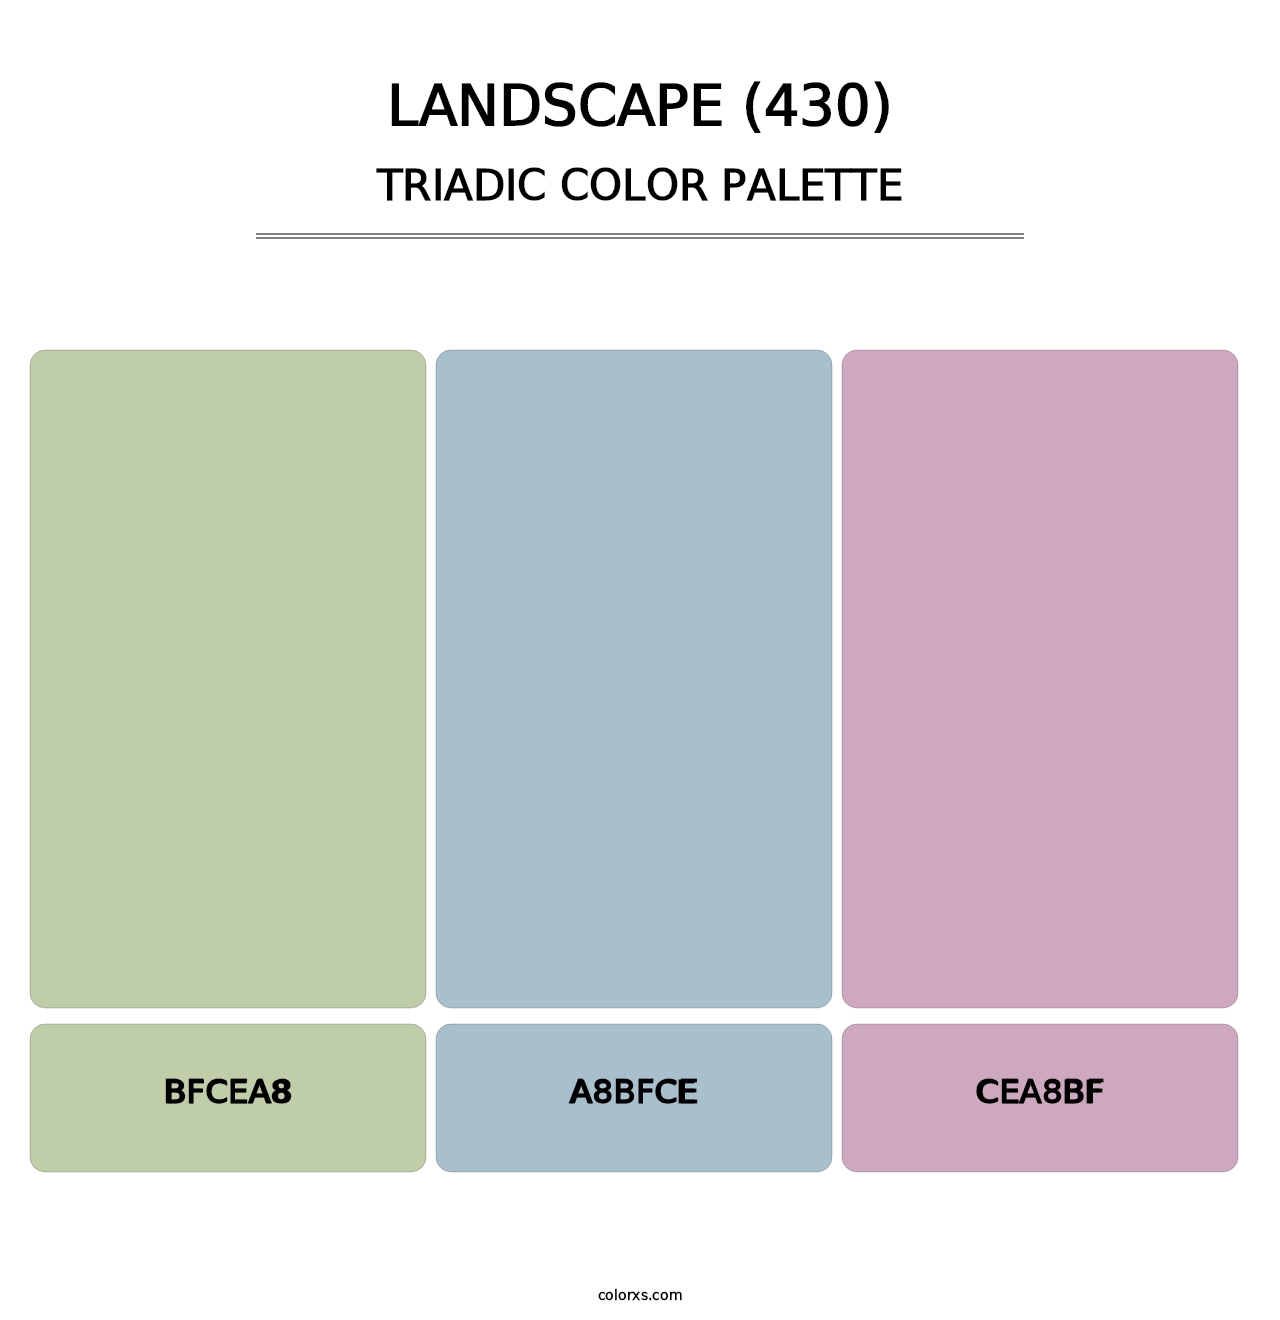 Landscape (430) - Triadic Color Palette